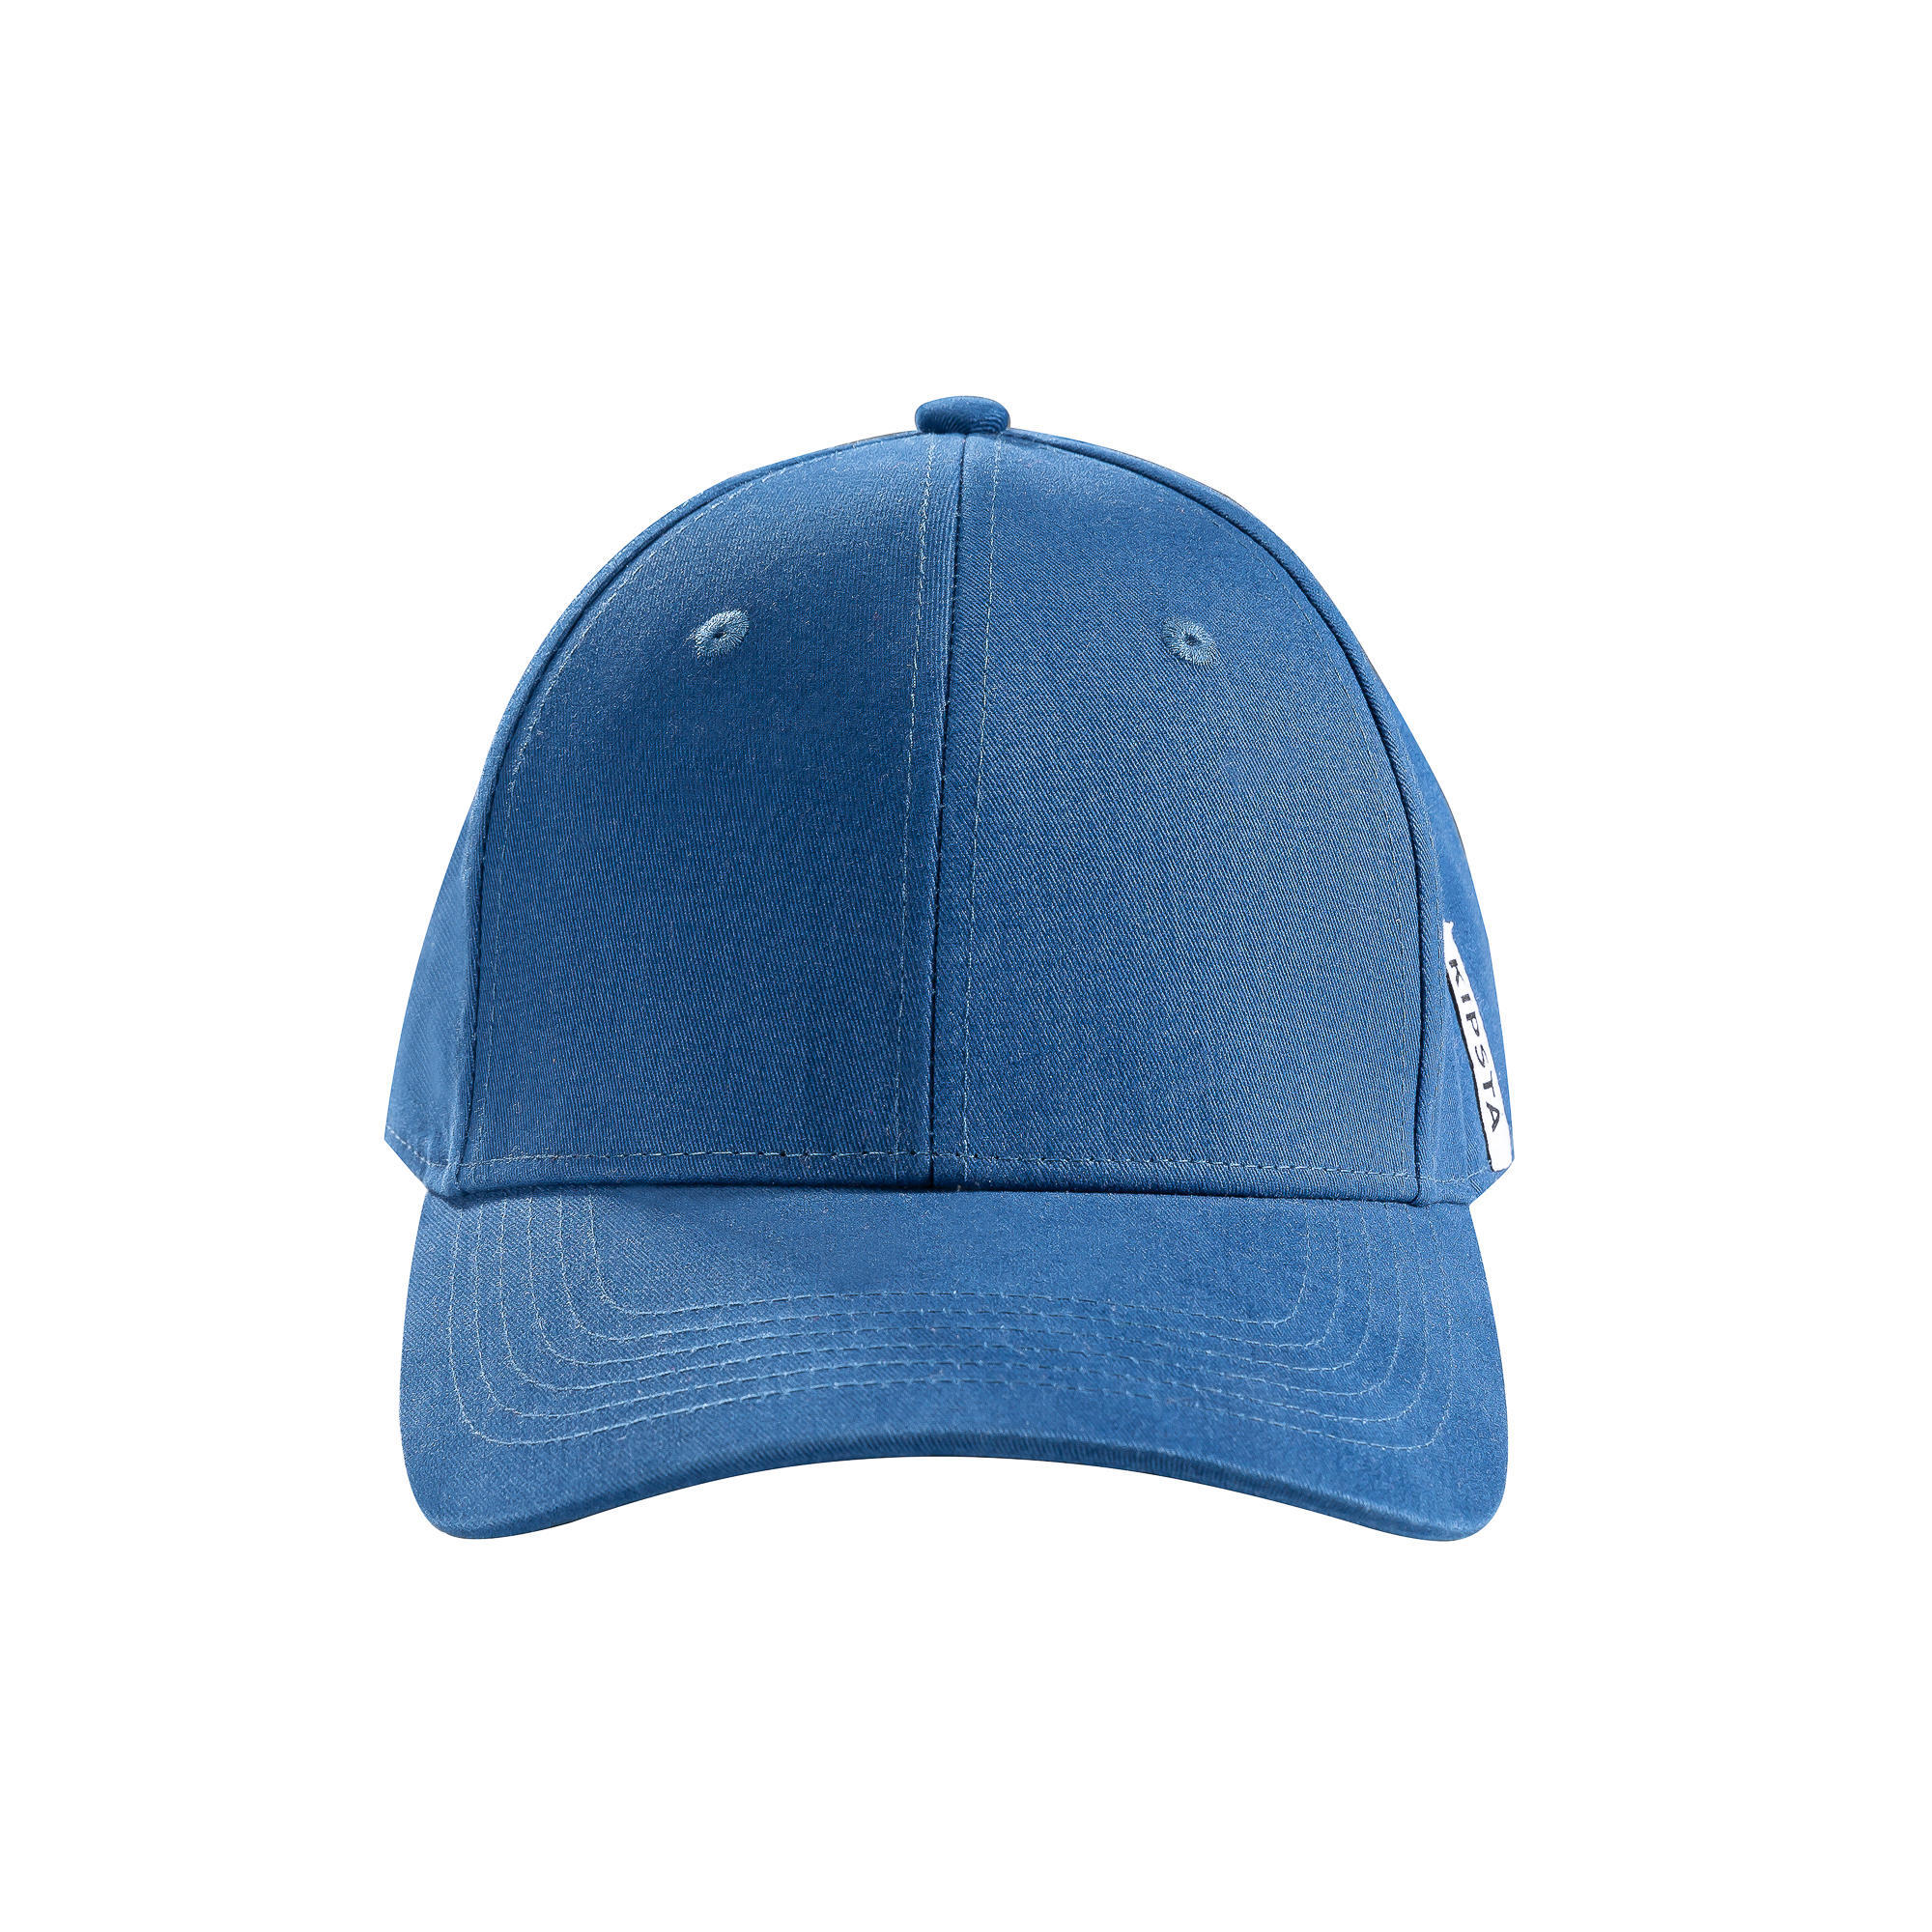 BASEBALL CAP BA550 ADJ Blue 1/8